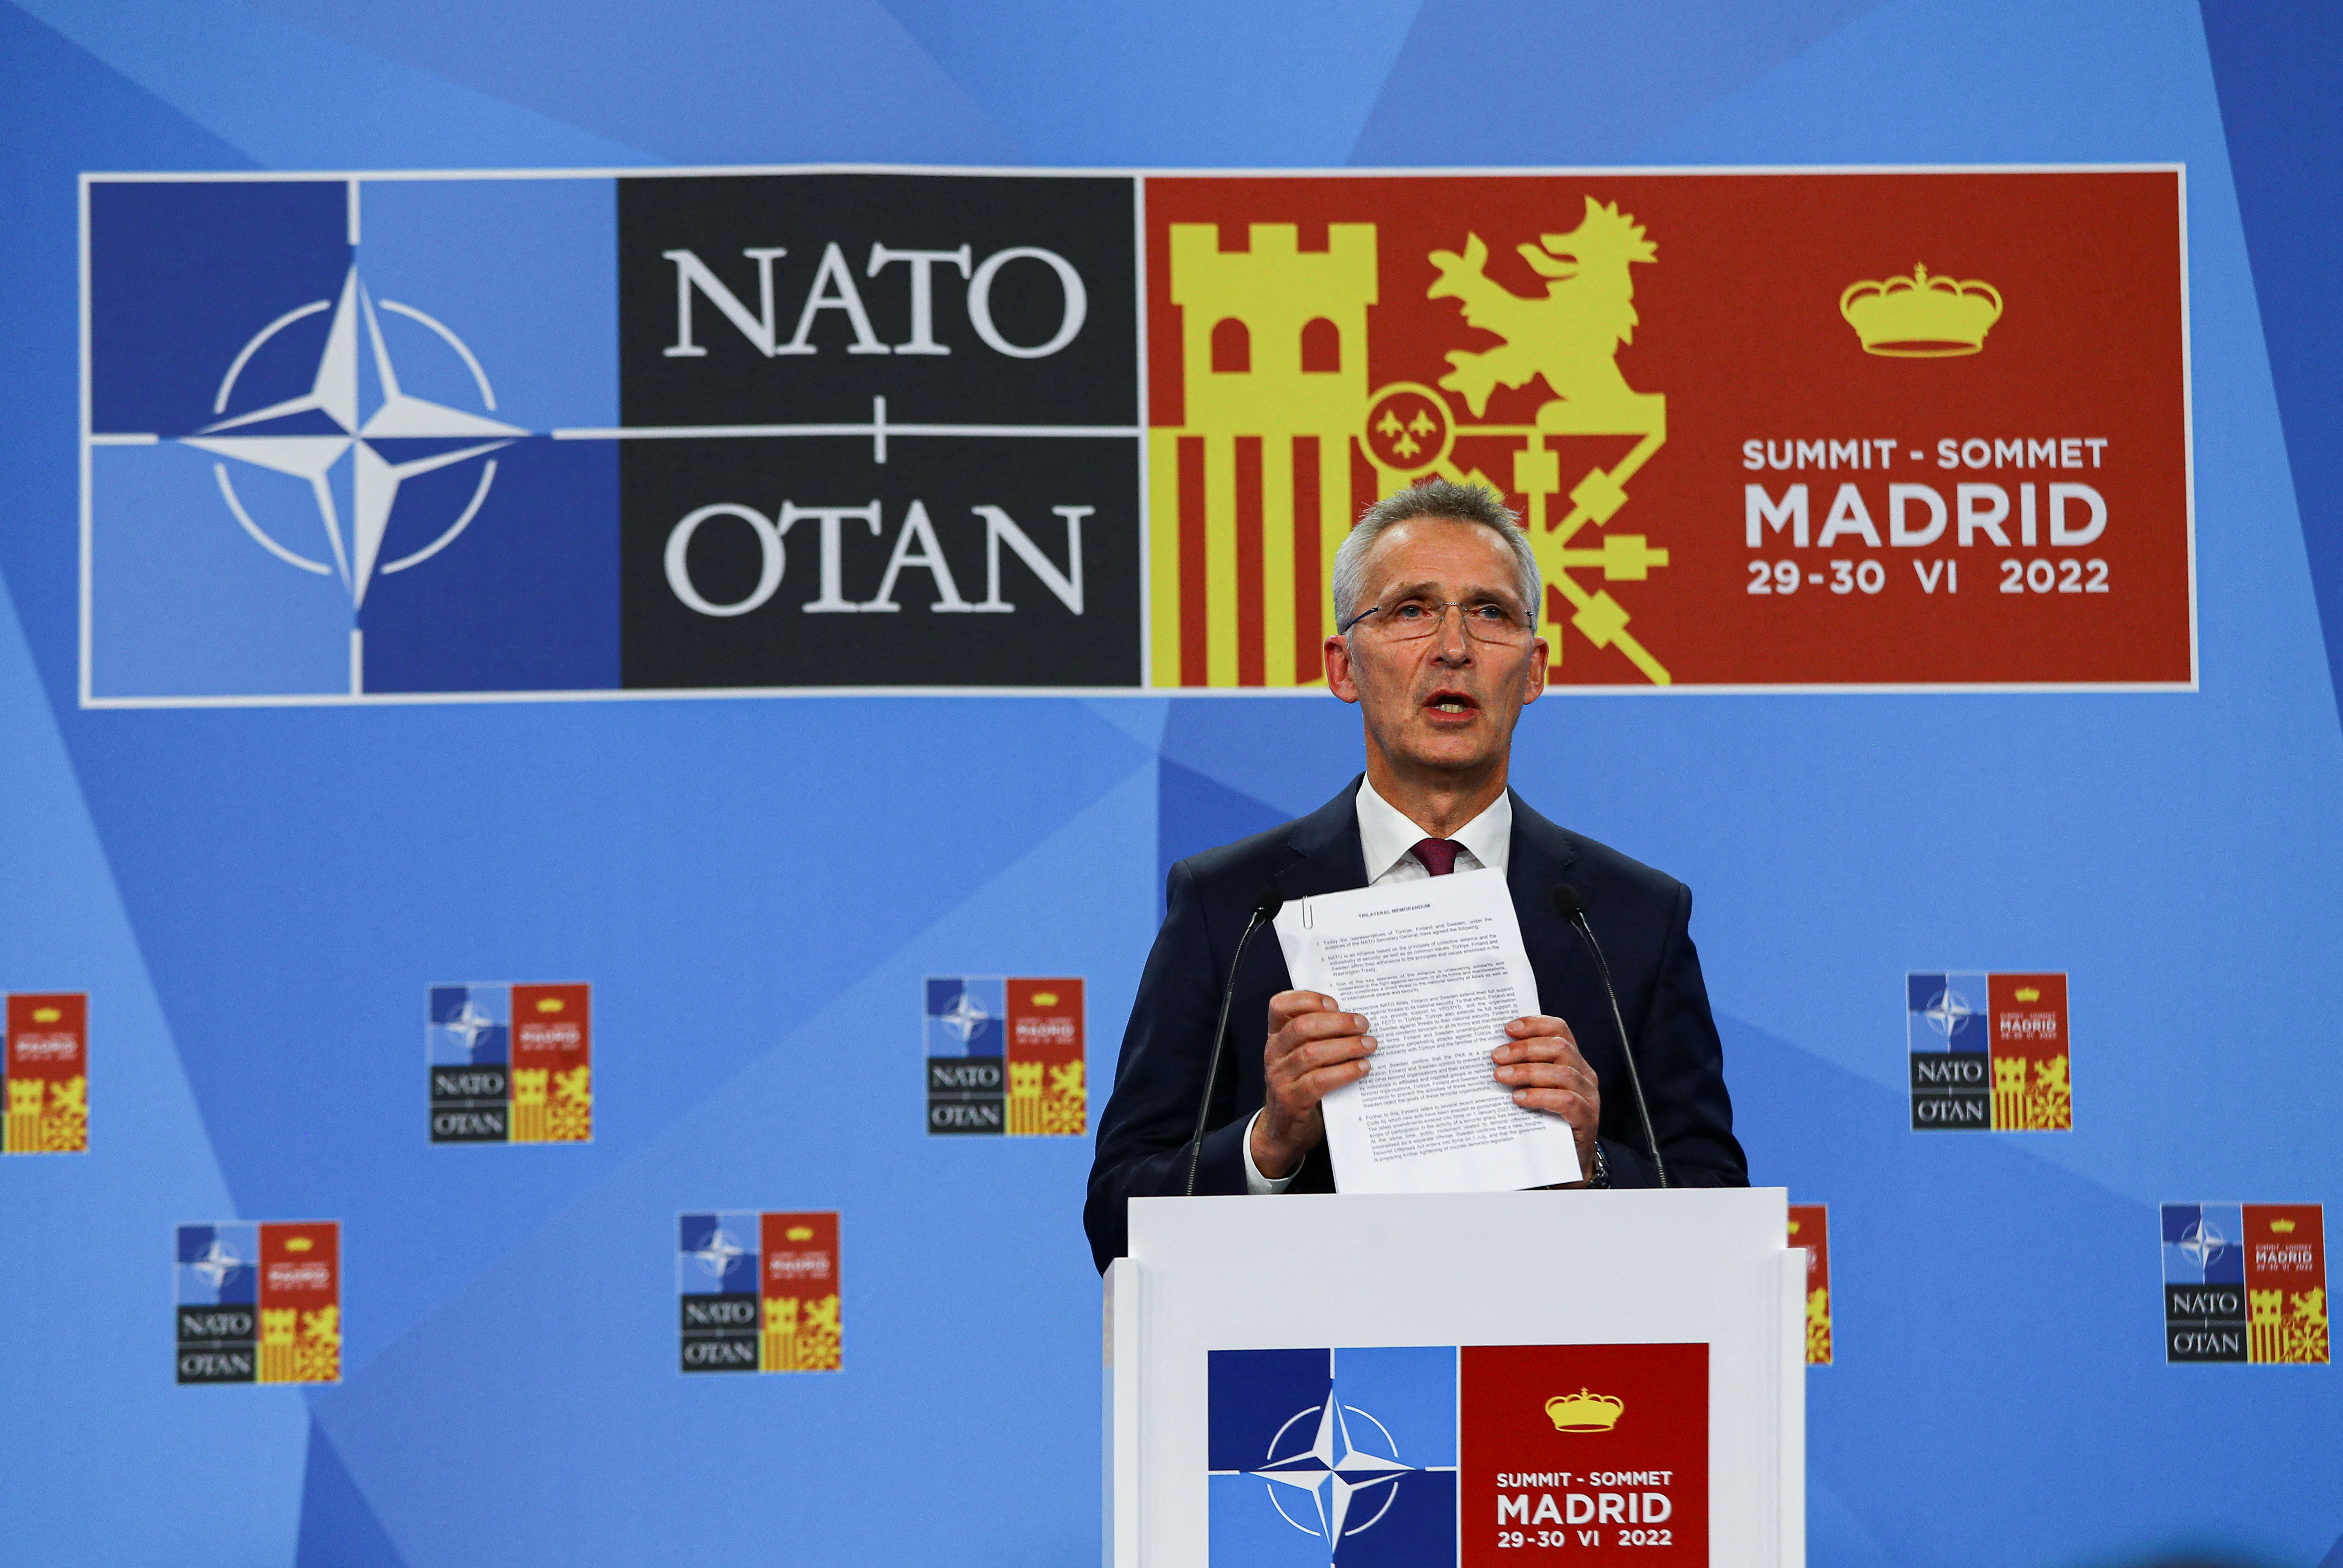 Rusia representa una “amenaza directa” para la seguridad de los países de la OTAN, reunidos en Madrid, declaró este miércoles Jens Stoltenberg